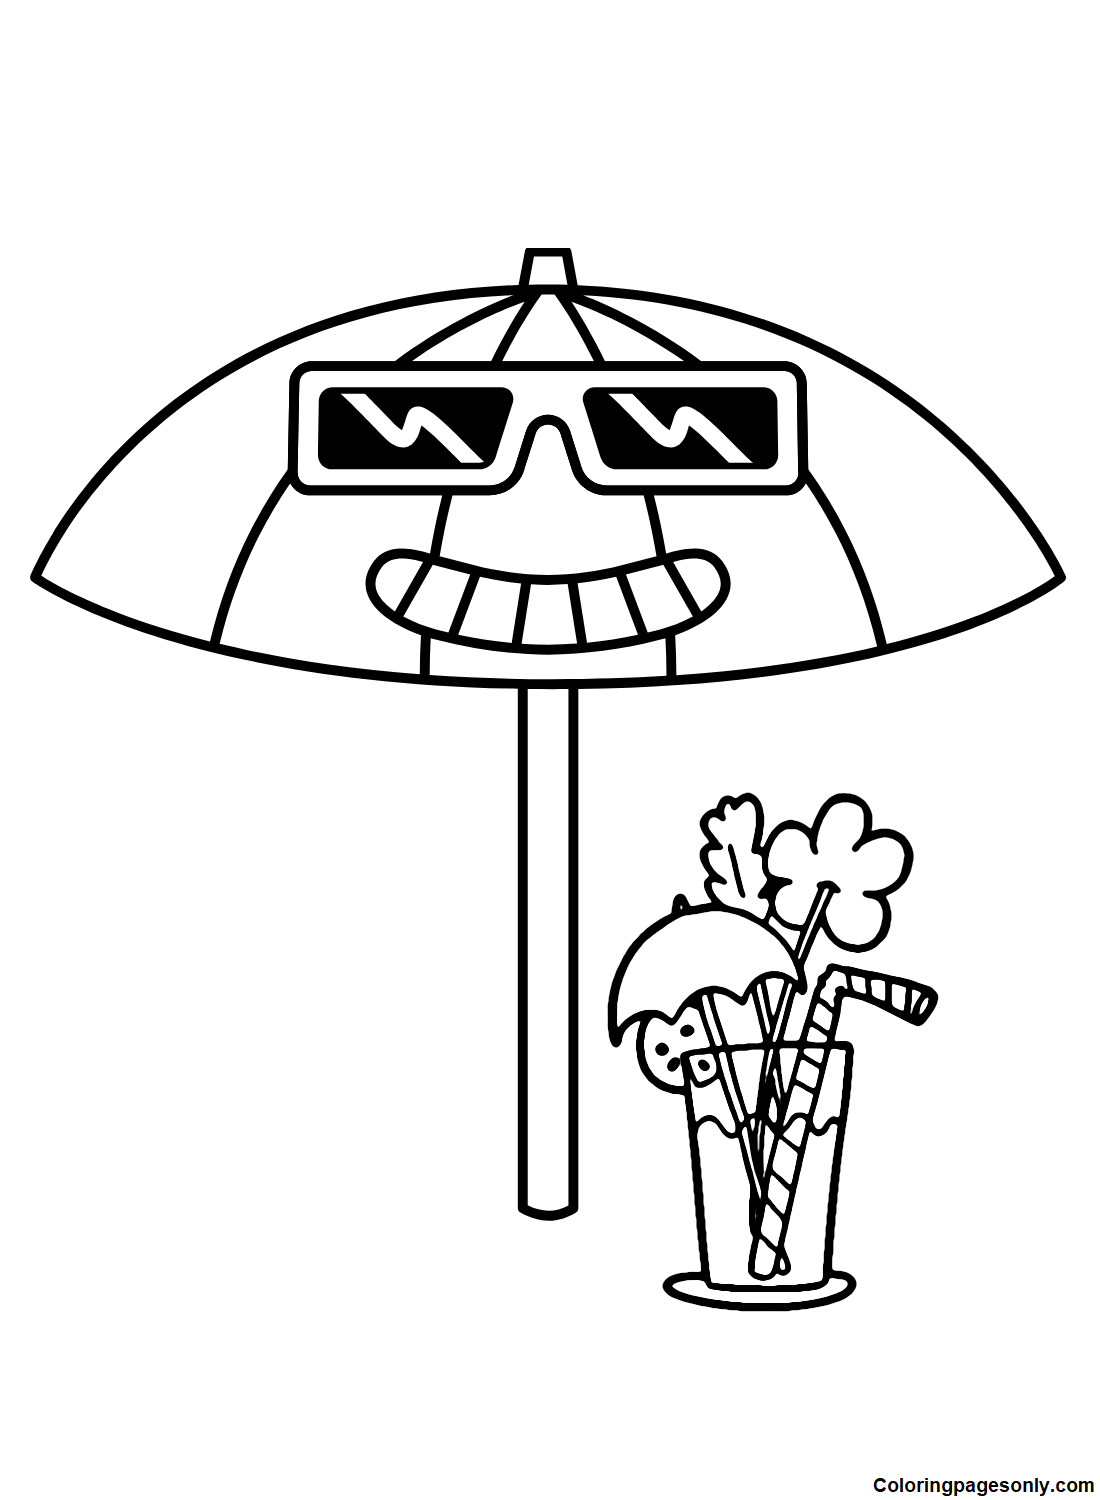 Funny Umbrella from Umbrella